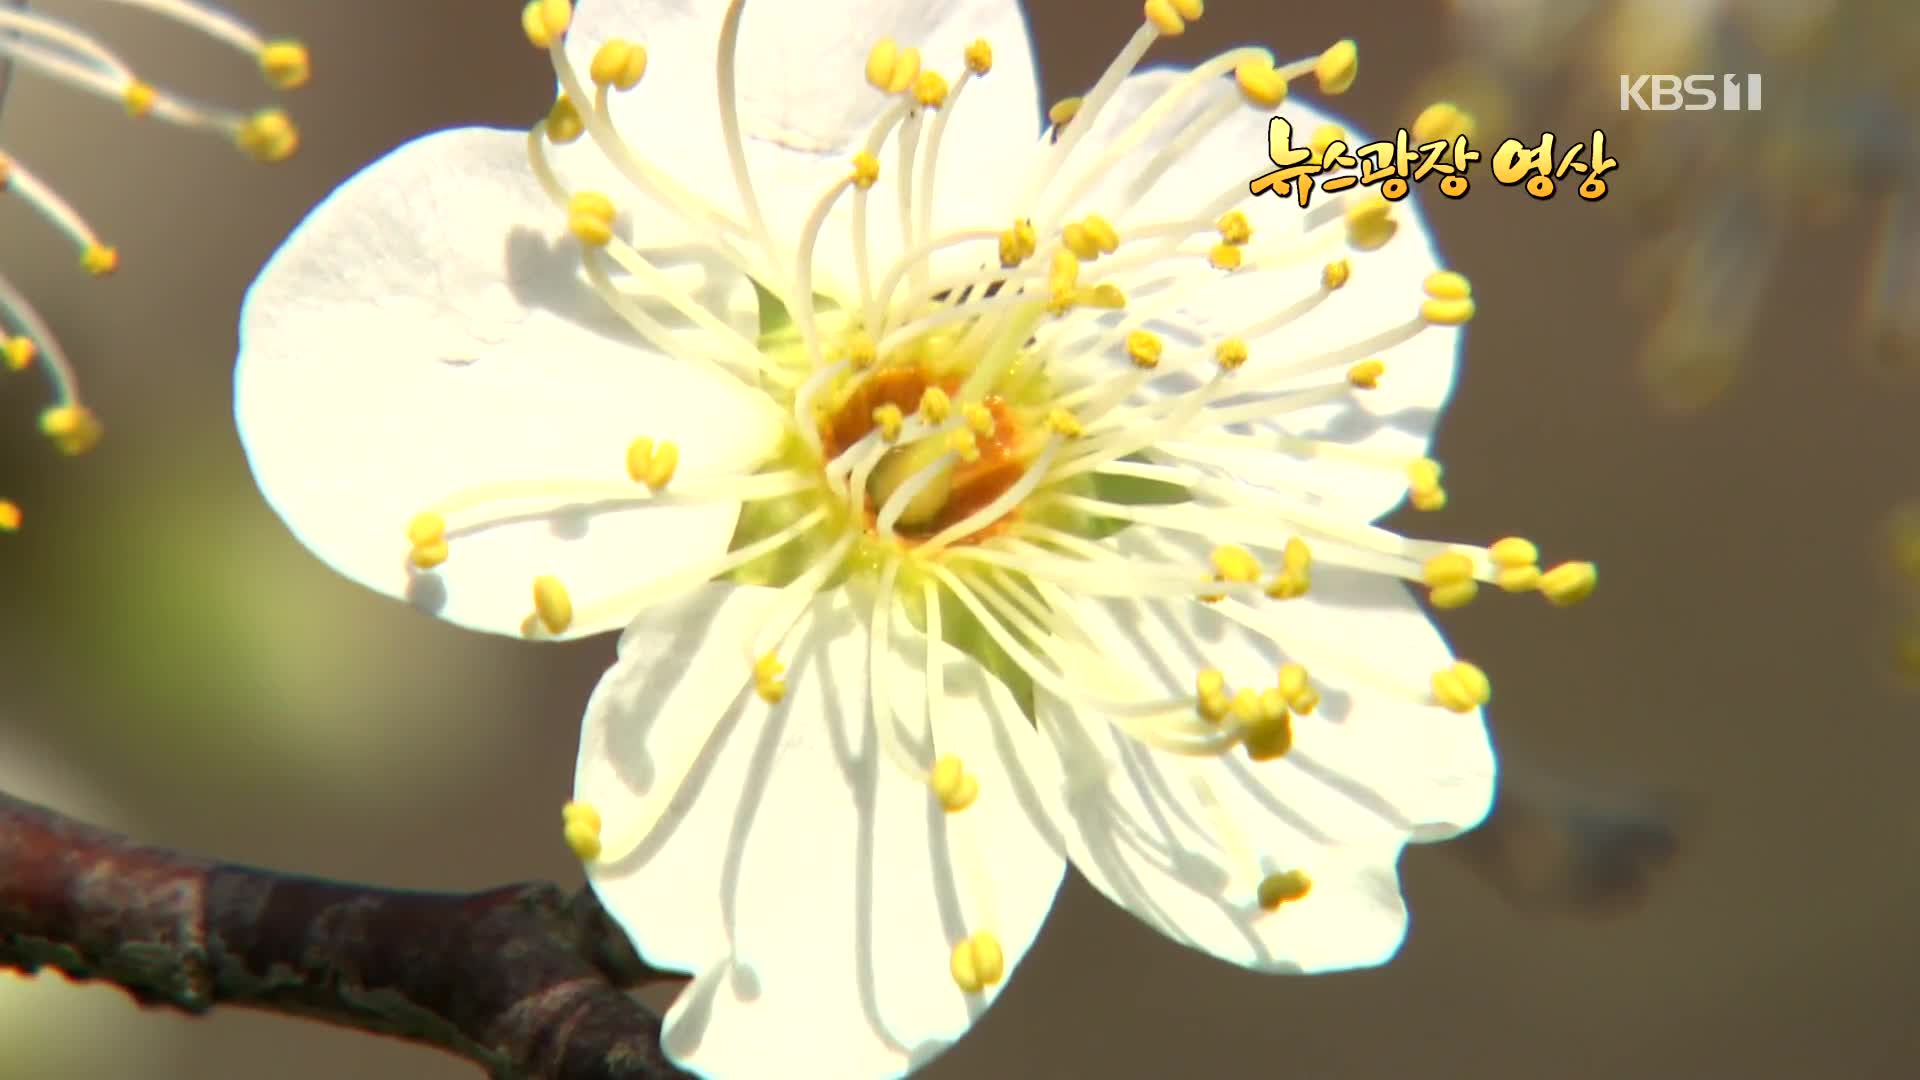 [뉴스광장 영상] 봄의 전령사 매화